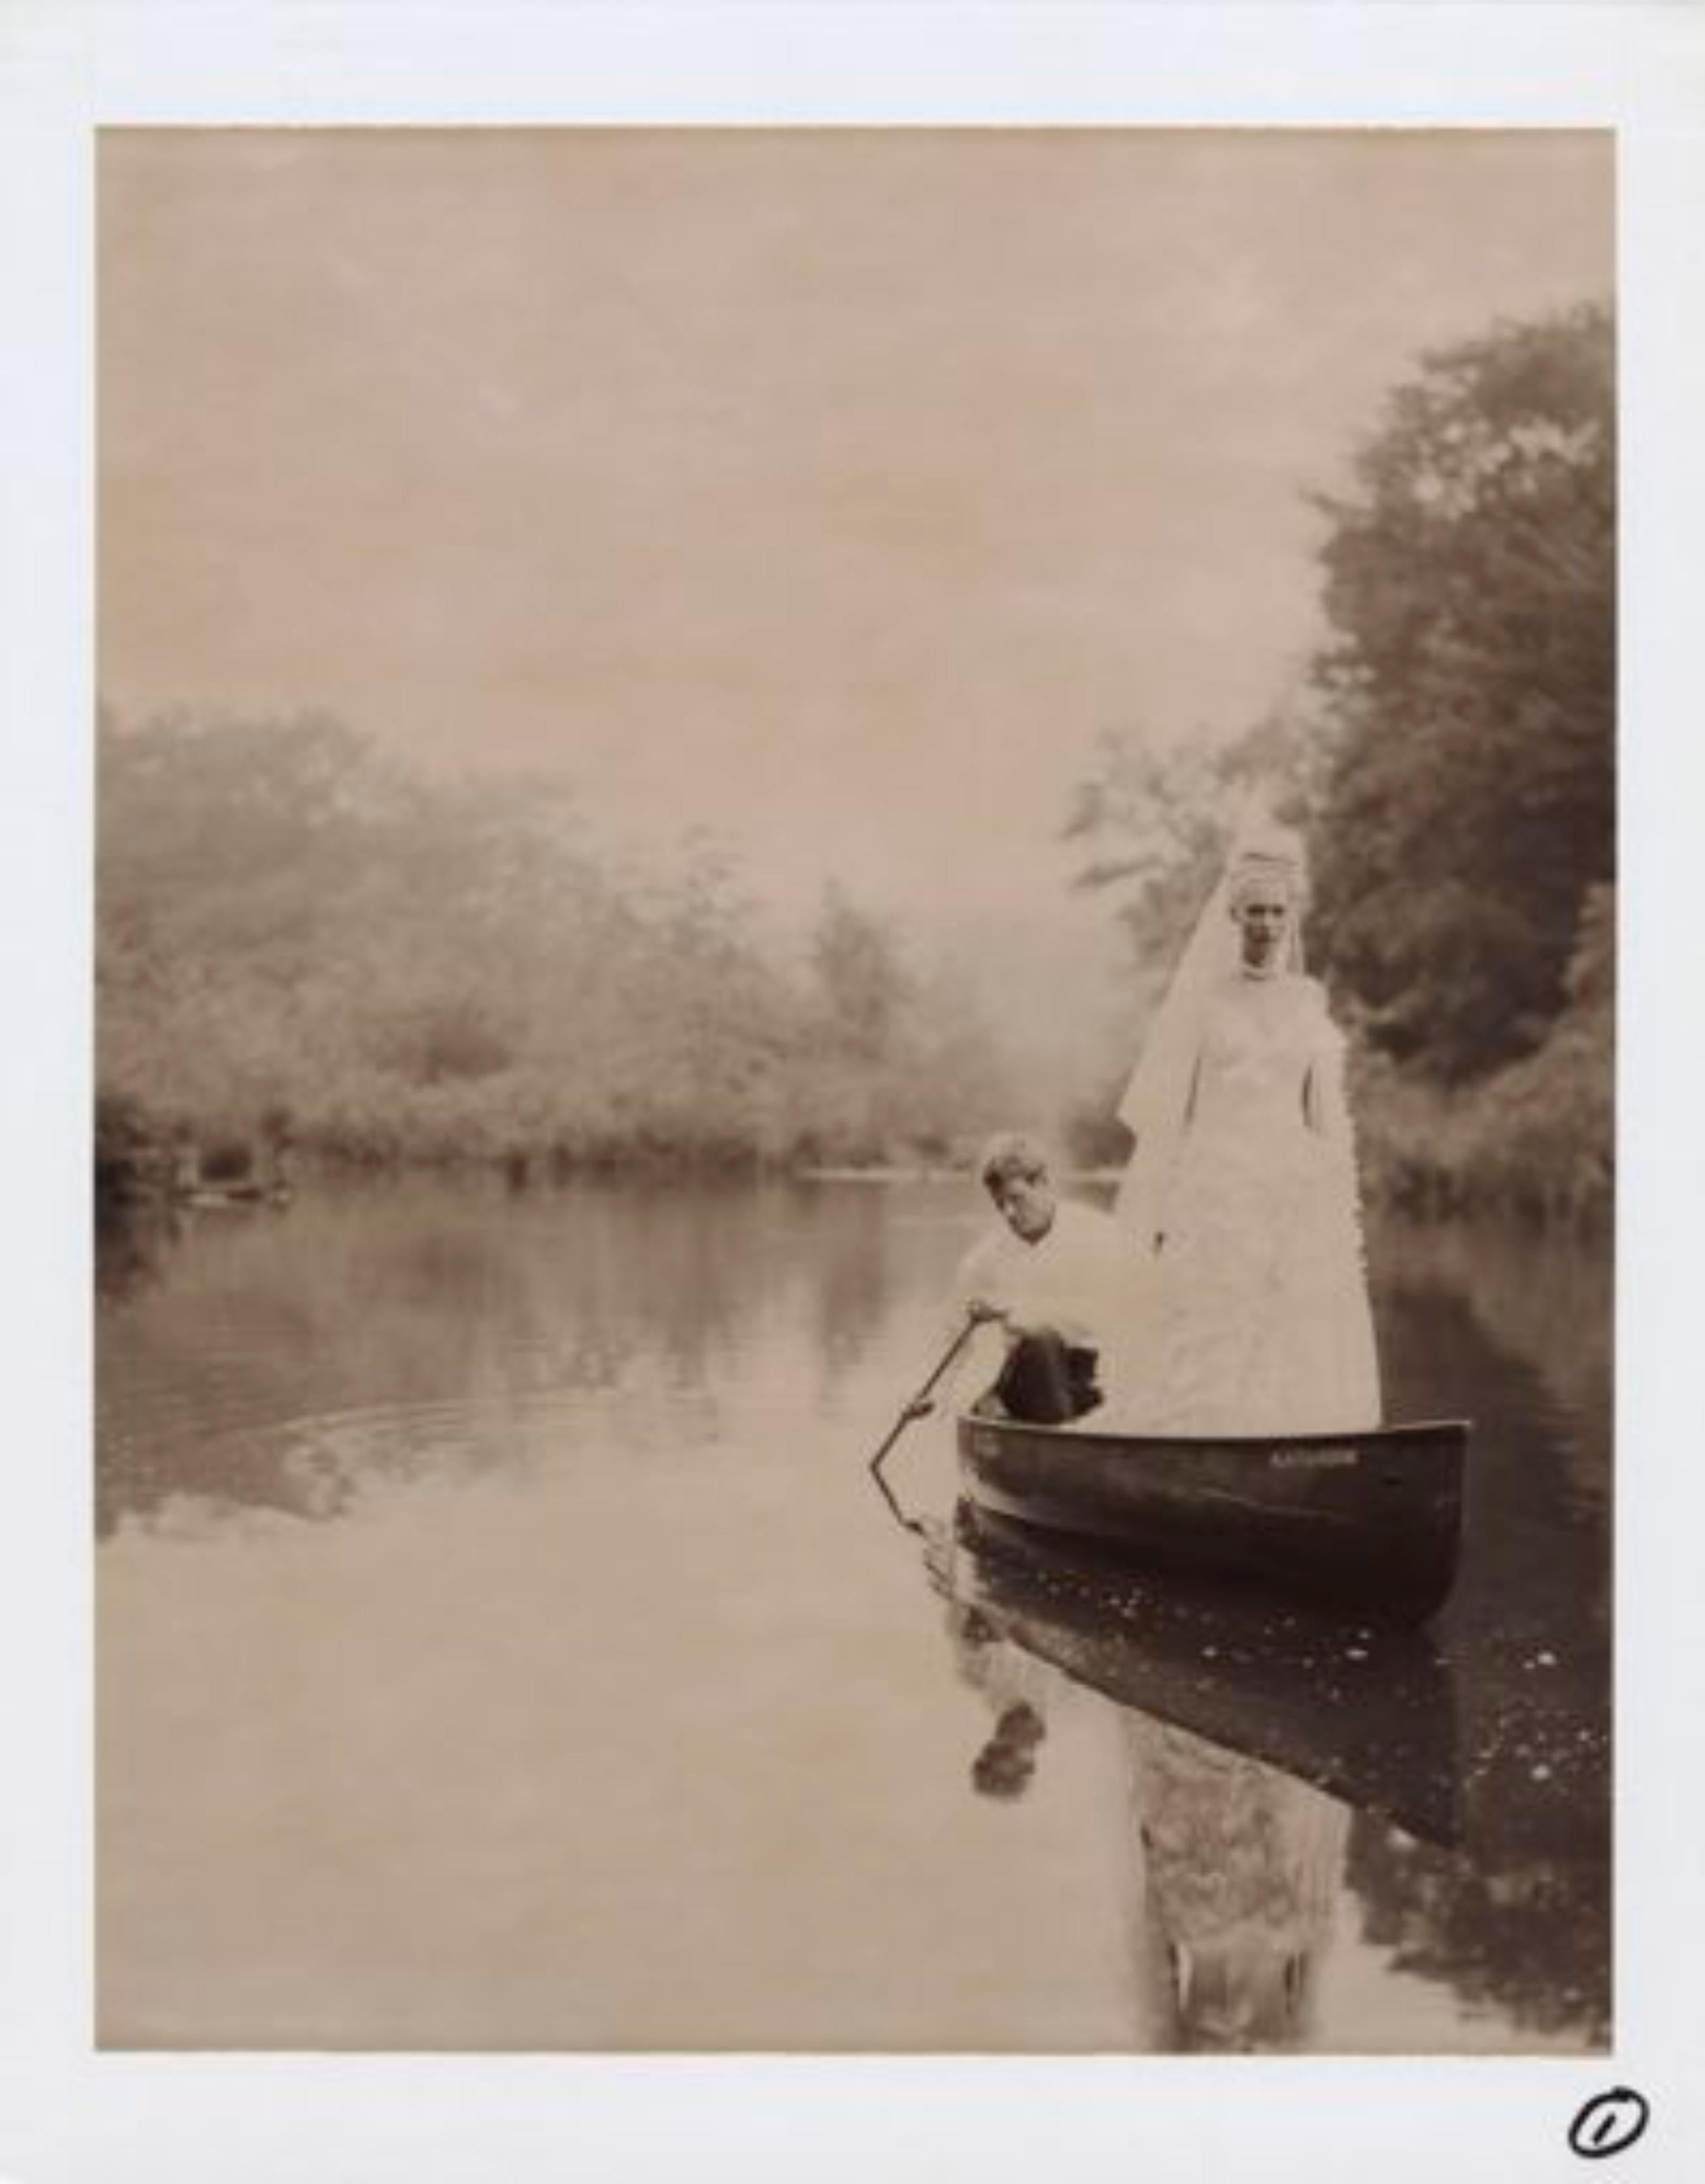 Jose Picayo Black and White Photograph - "Brides Magazine, Canoe", Bedford, NY, 2003